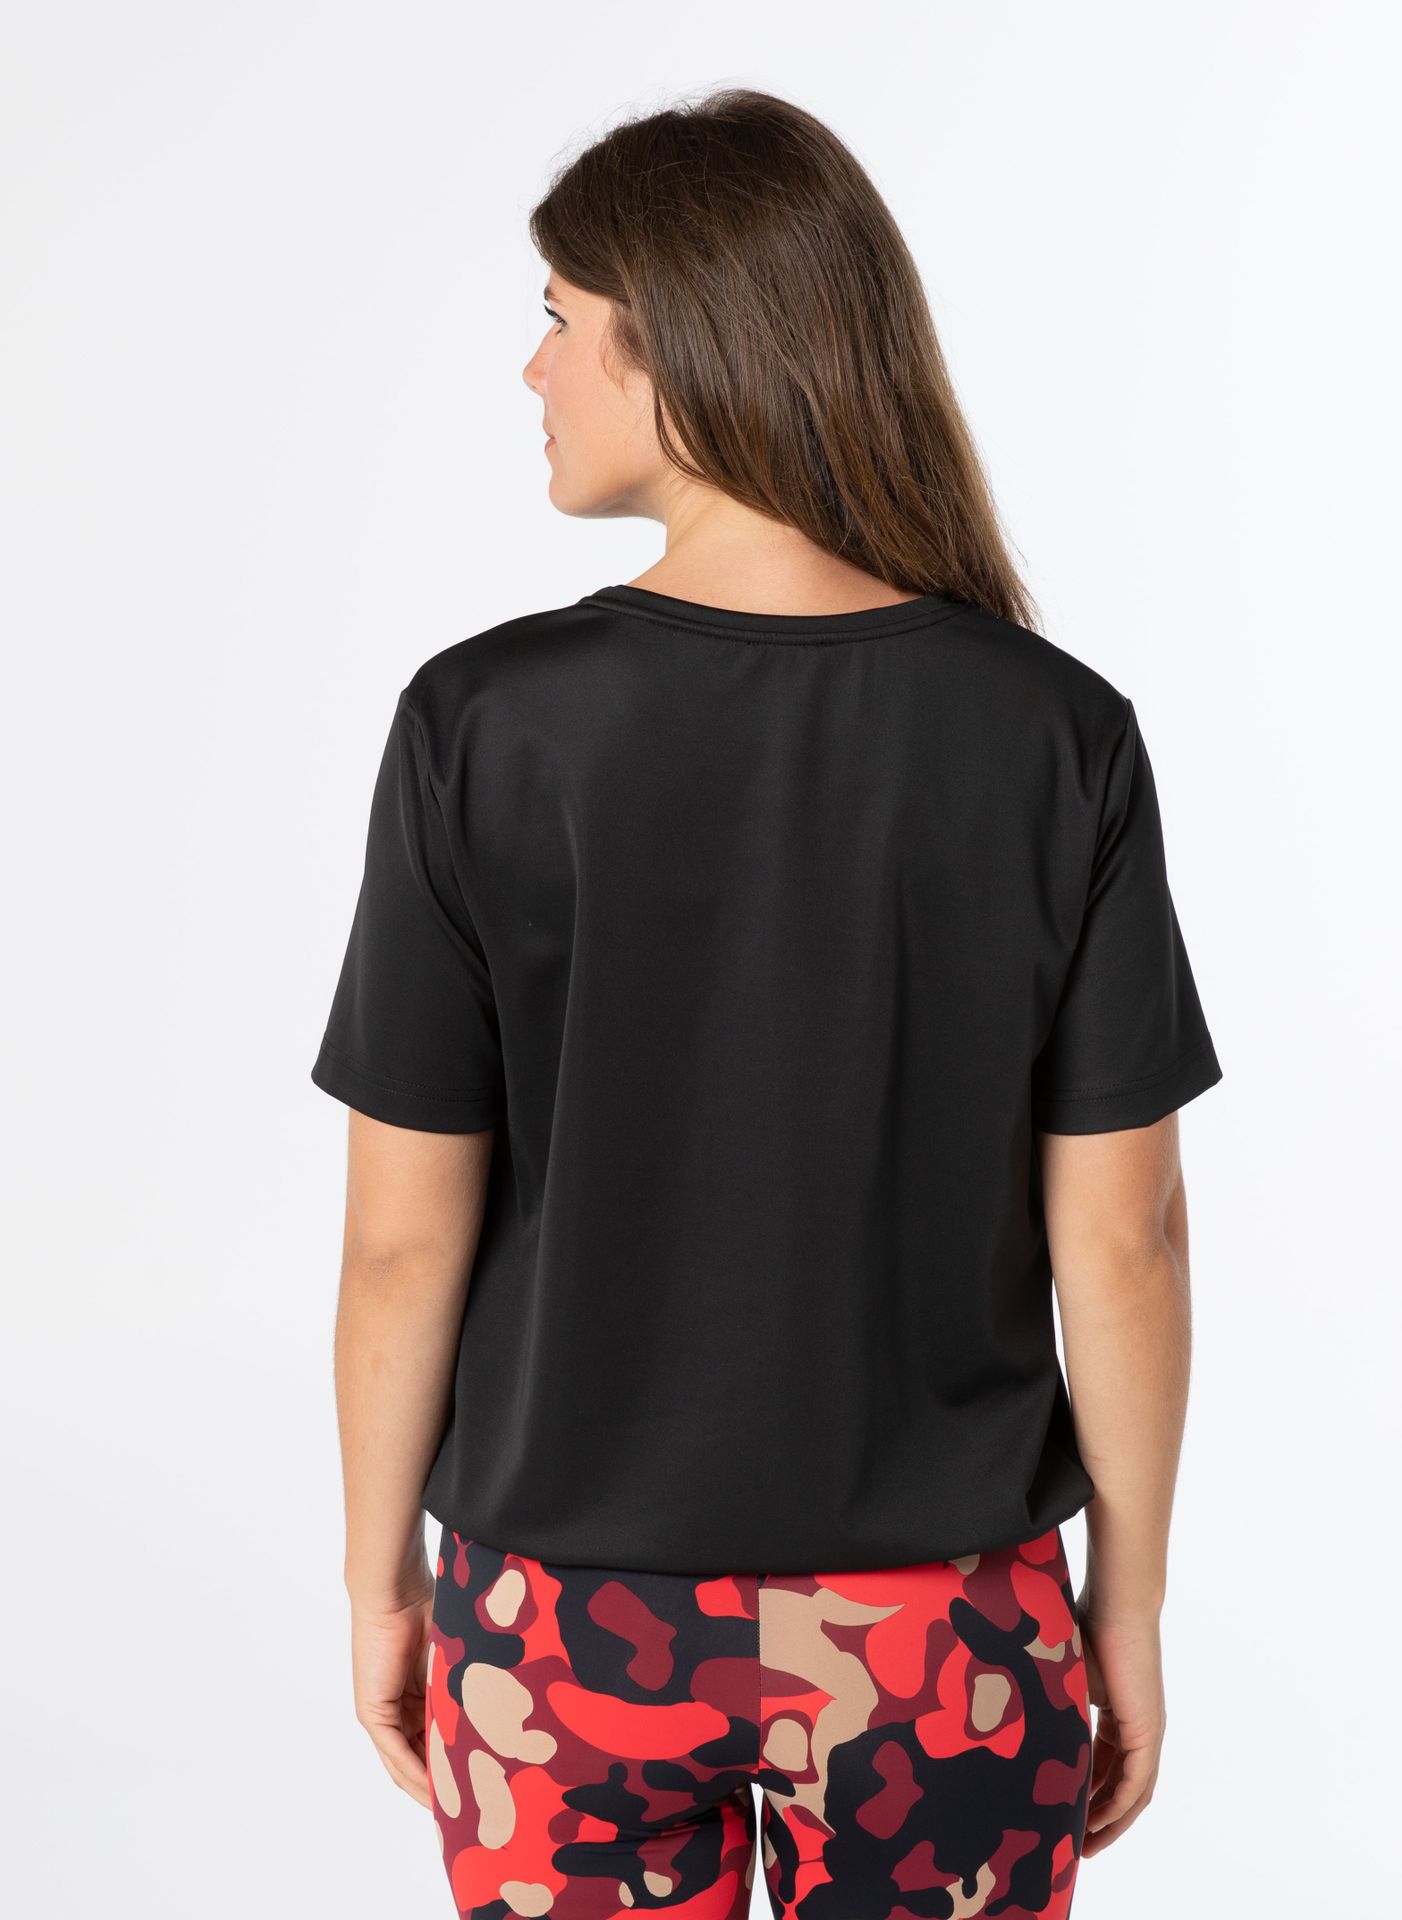 Norah Shirt - Activewear black 211632-001